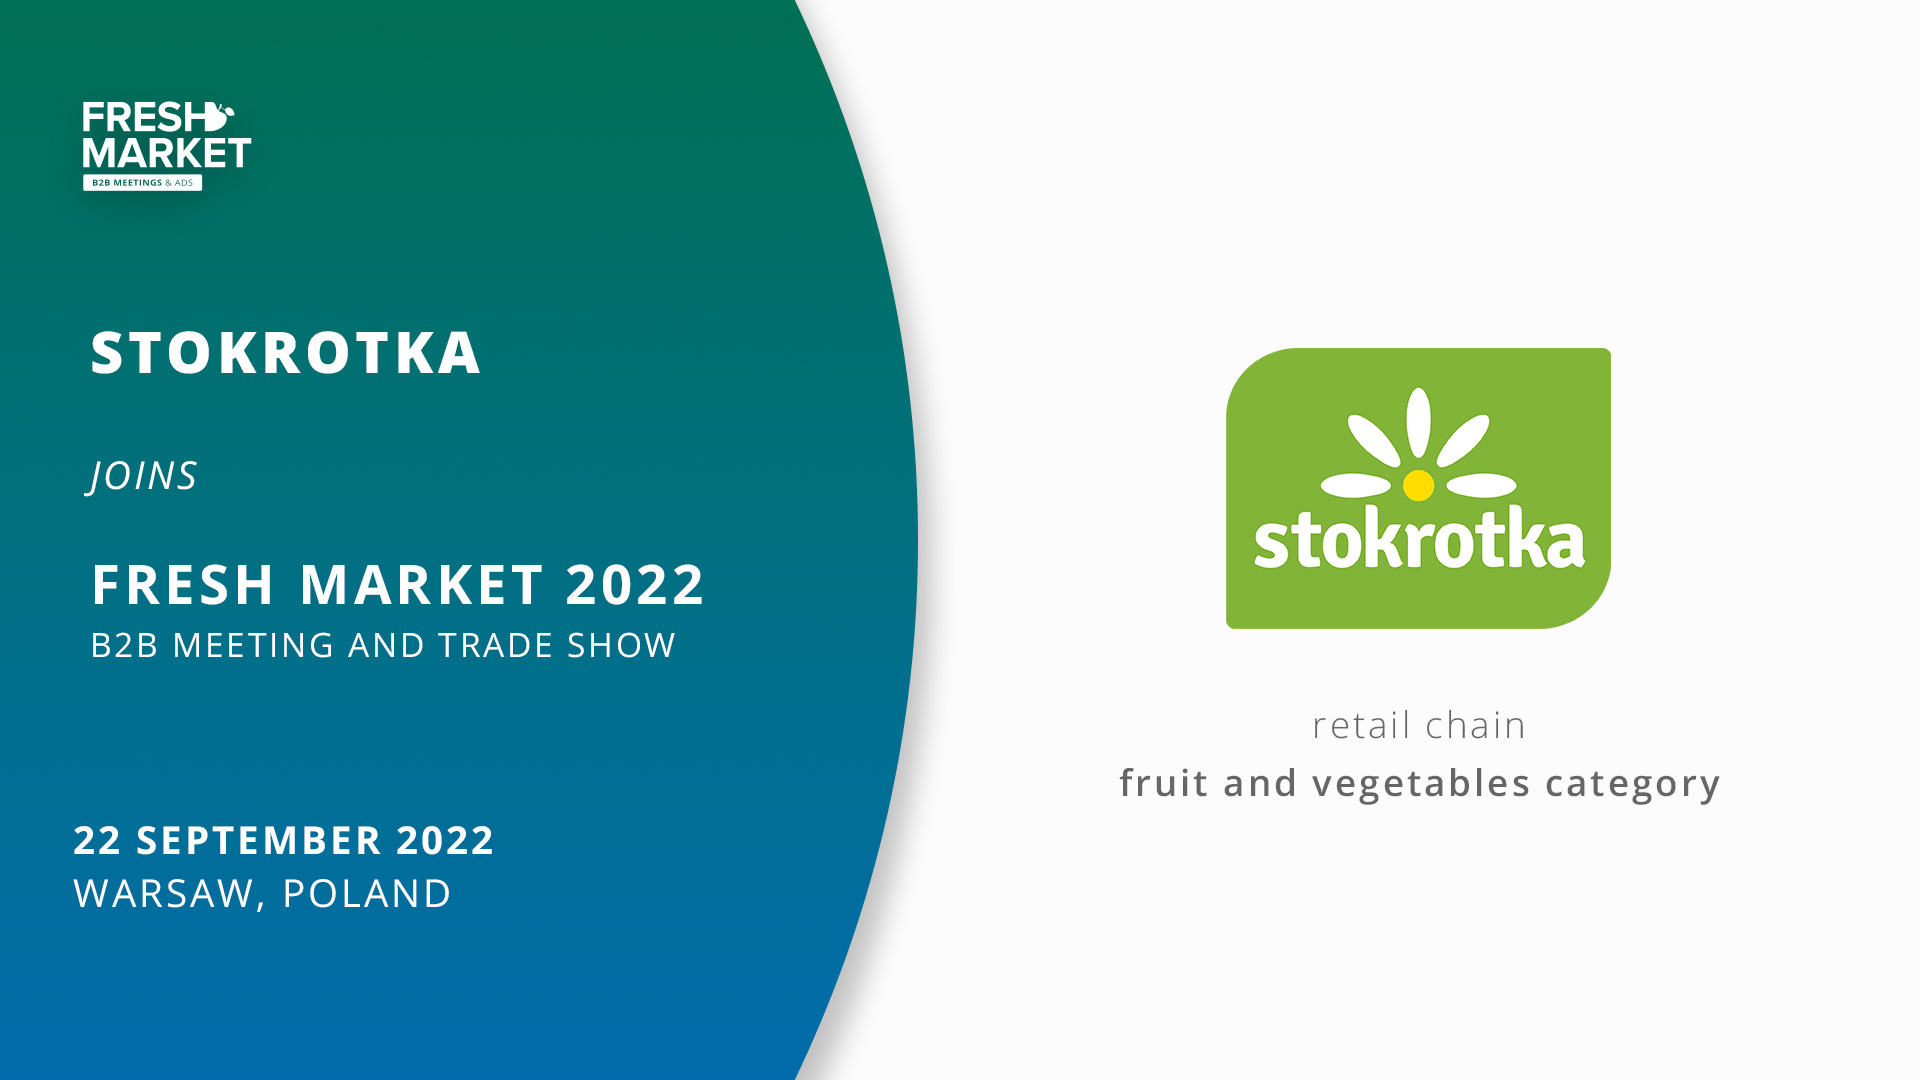 Stokrotka Fresh Market 2022